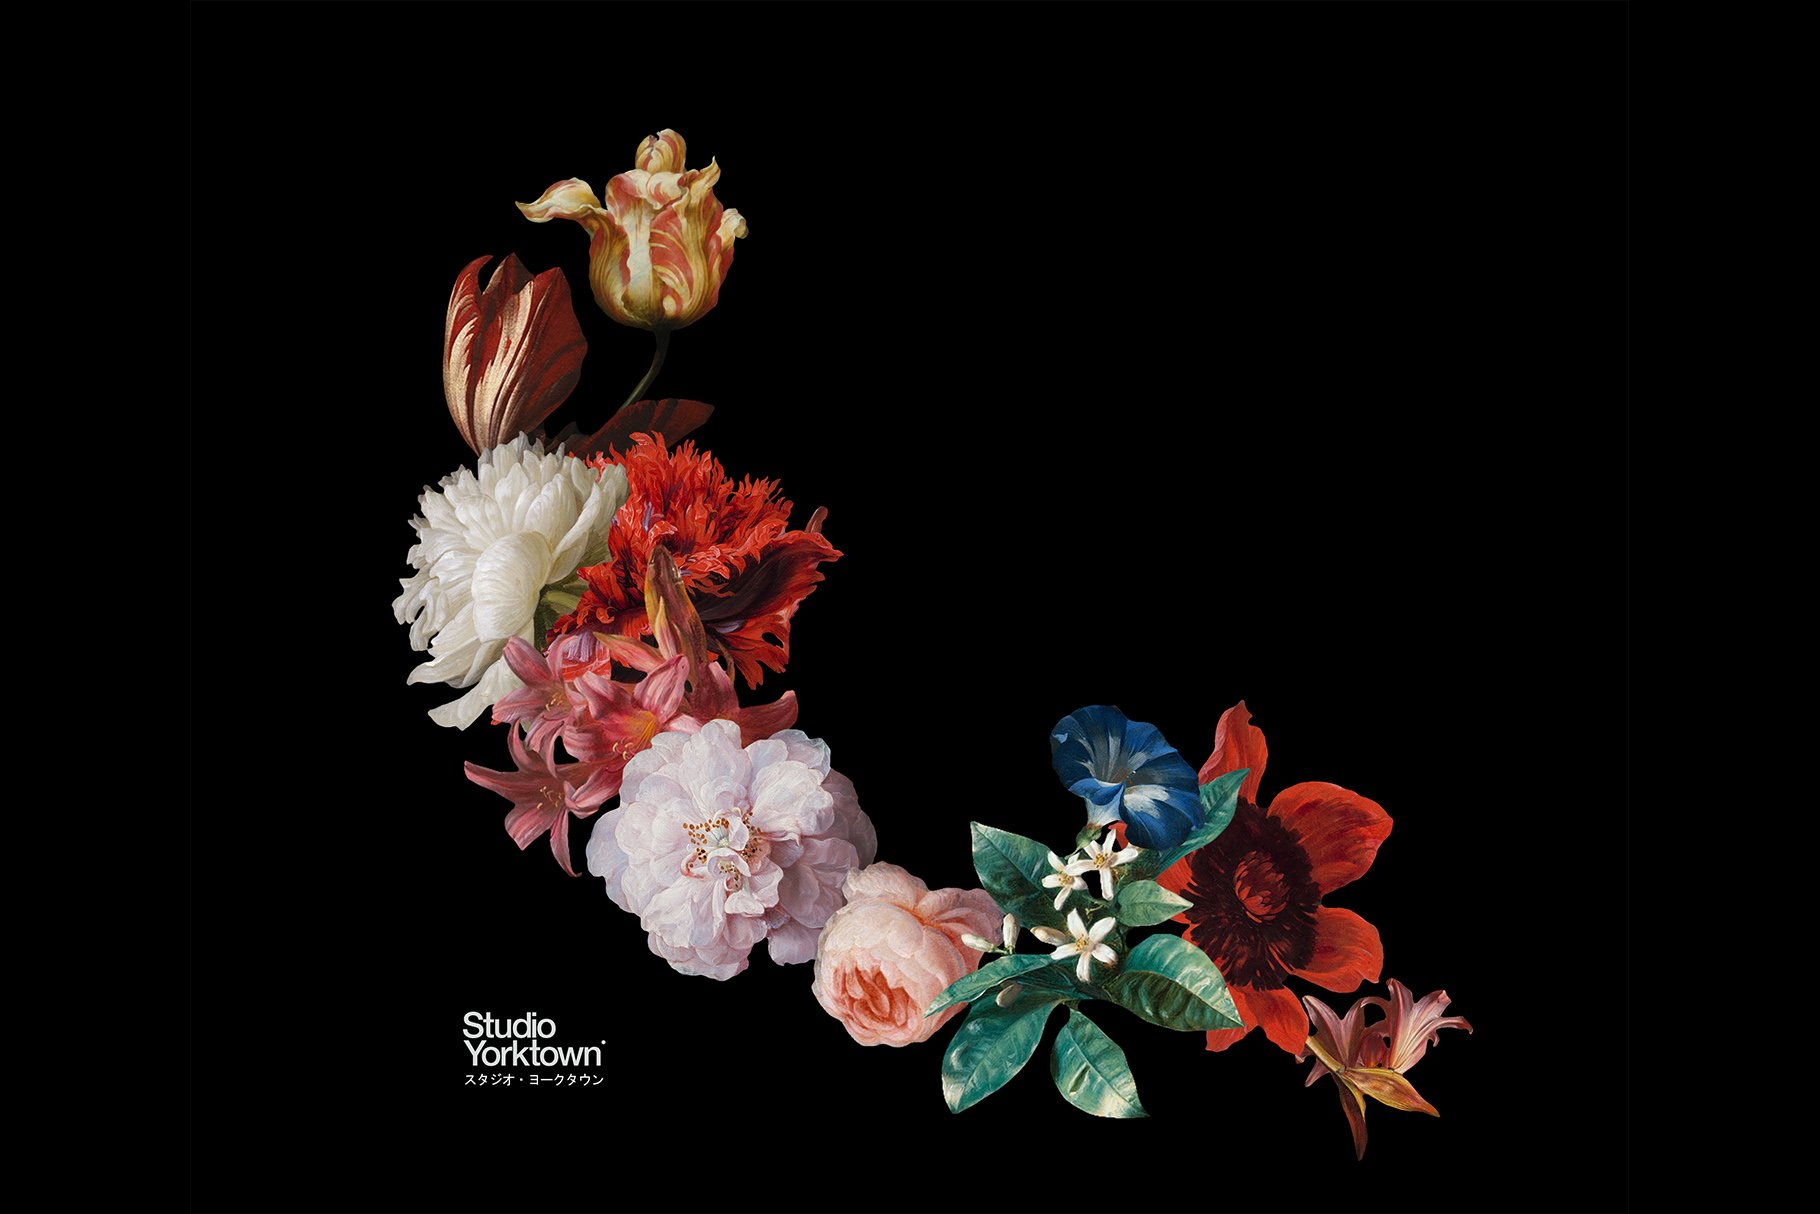 100多种复古花卉古典艺术品图像集合 Kurohana – Moody Florals Collection 图片素材 第10张